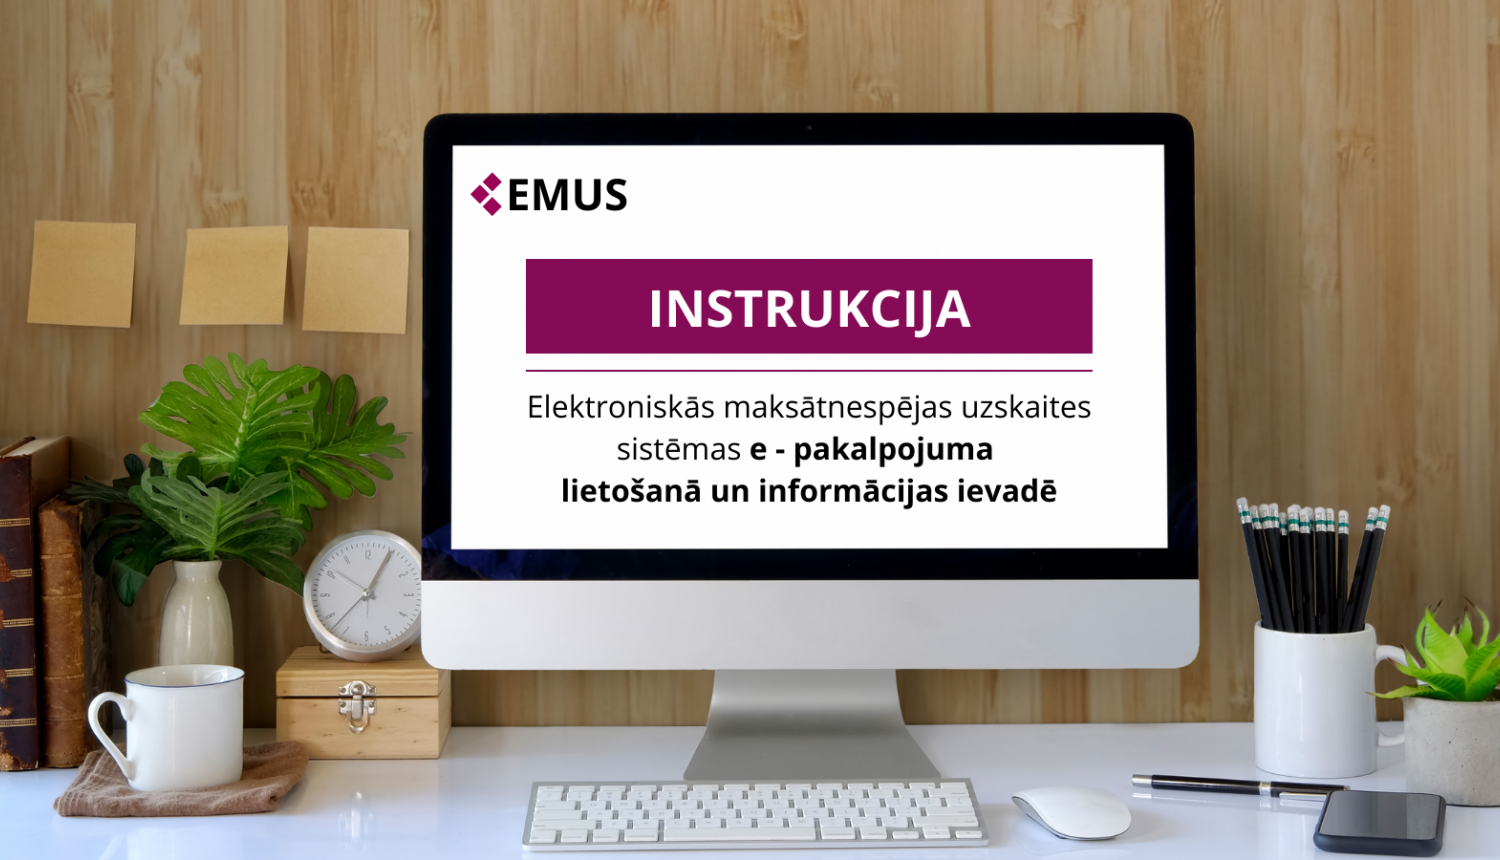 EMUS e-pakalpojuma instrukcija